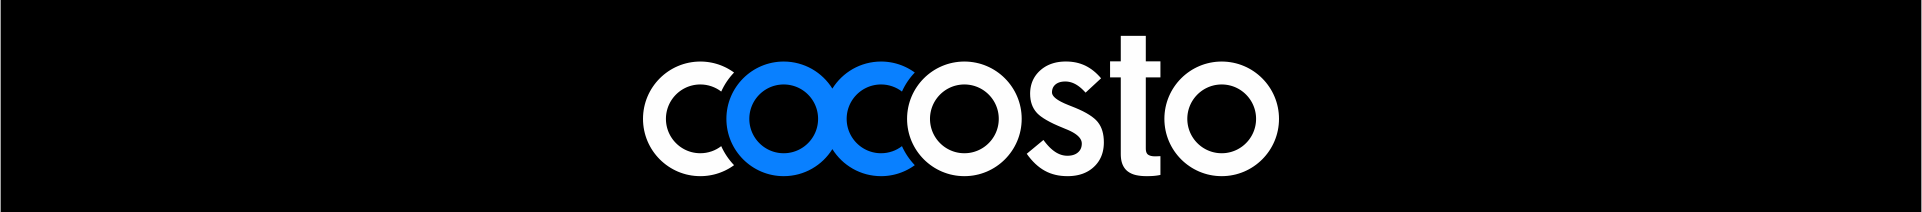 Cocosto UX Design Studio's profile banner